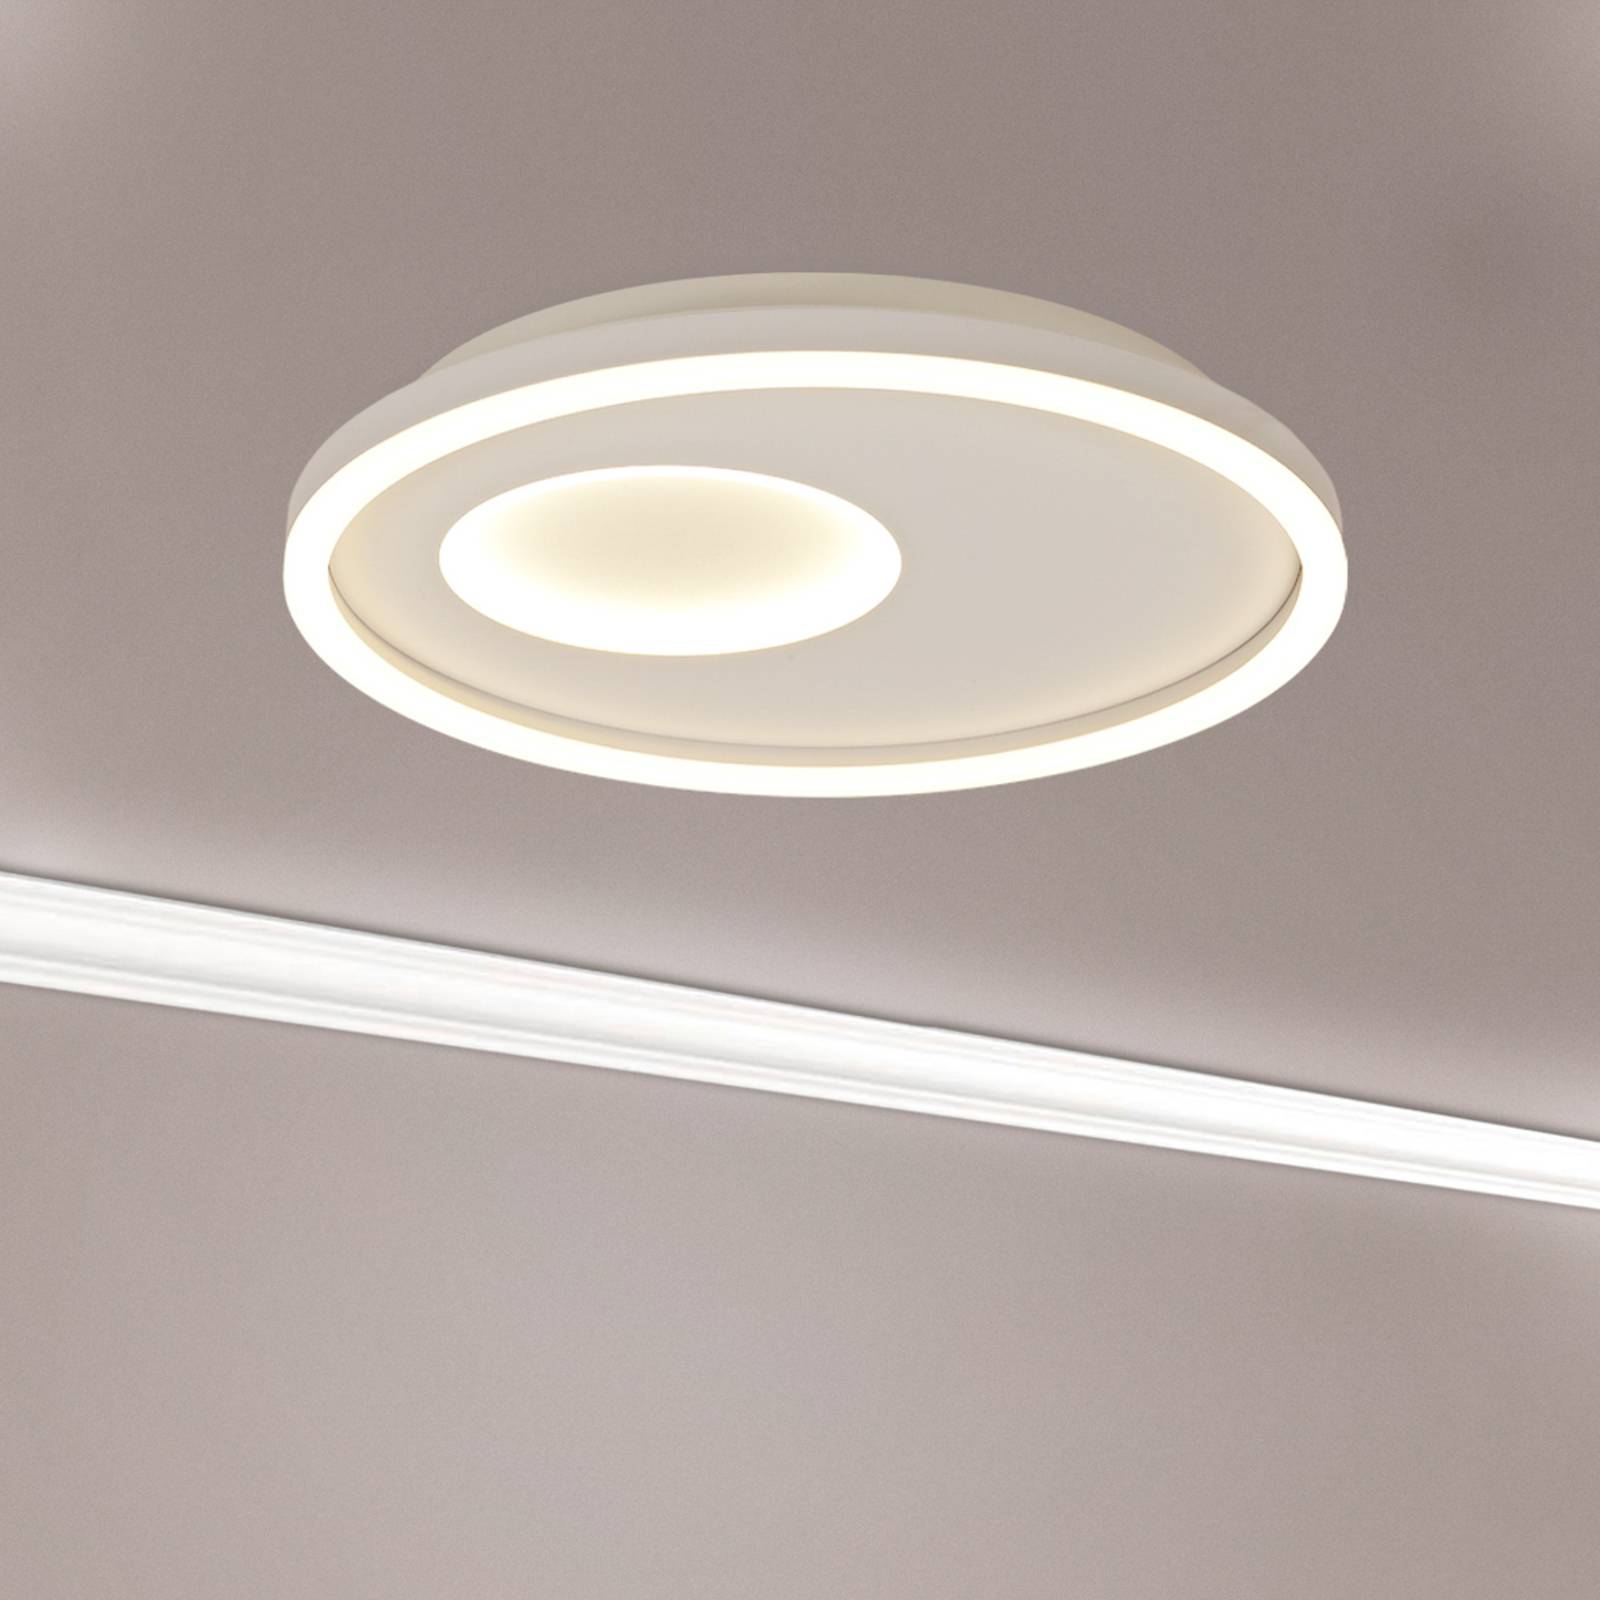 LED-Deckenlampe Krater weiß tunable white dimmbar günstig online kaufen